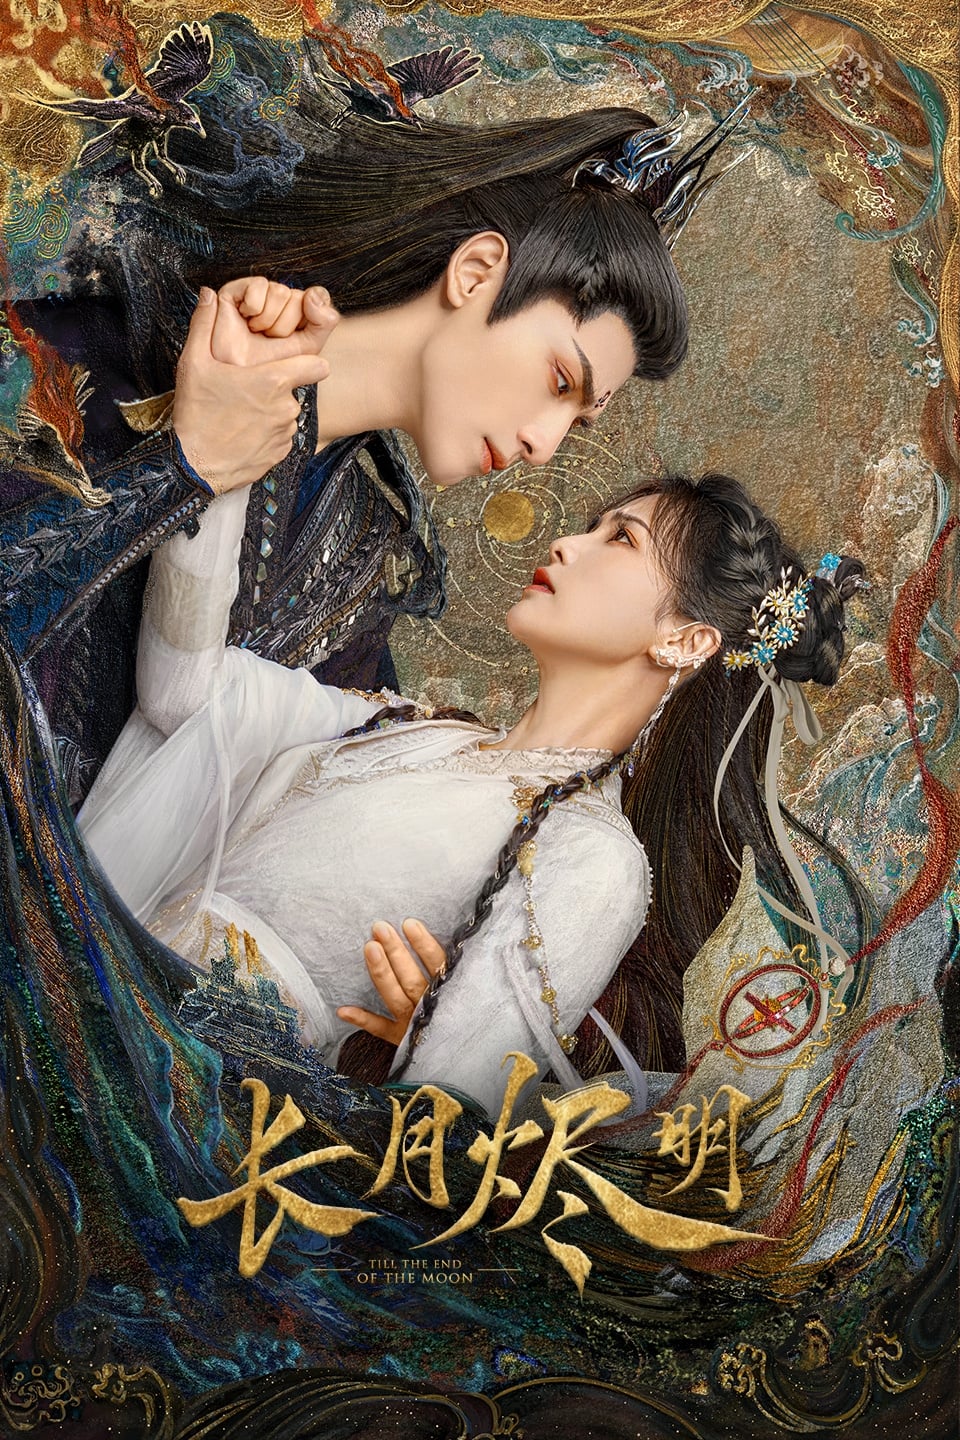 Les saisons de 长月烬明 sont-elles disponibles sur Netflix ou autre ?